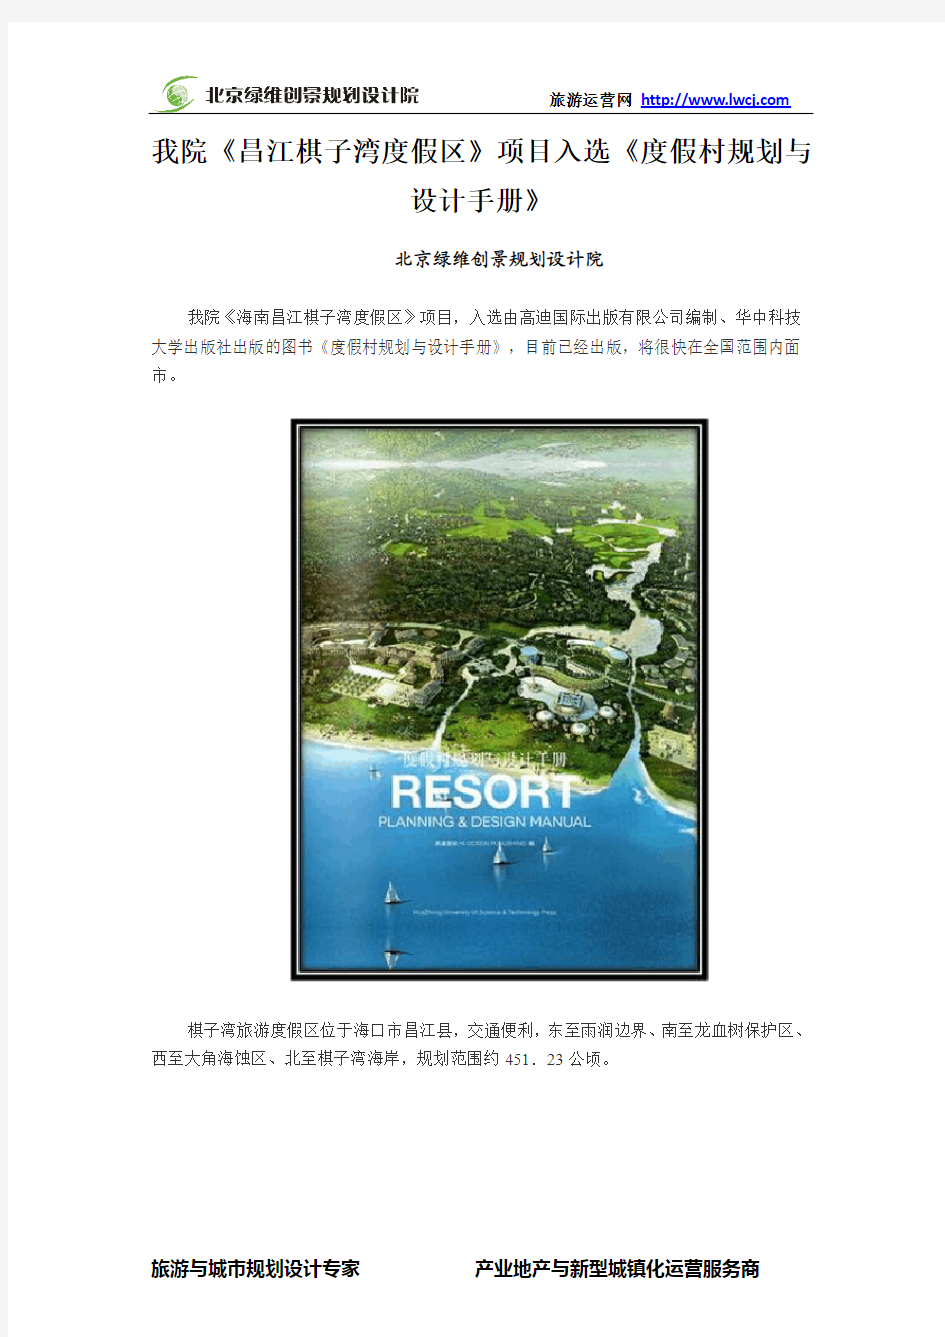 绿维创景《昌江棋子湾度假区》项目入选《度假村规划与设计手册》